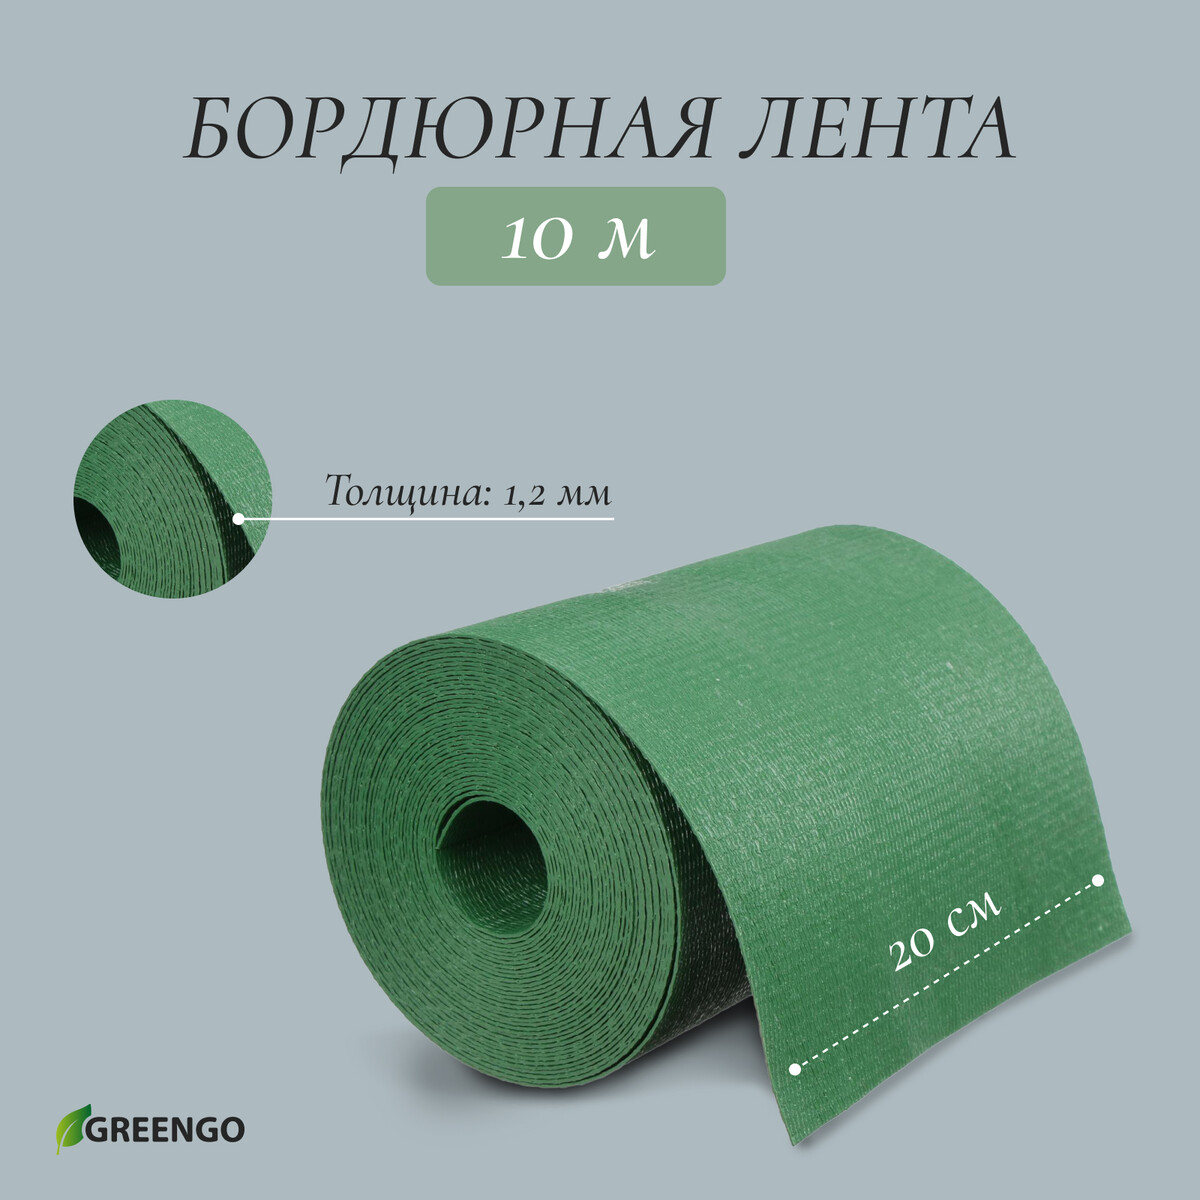 Лента бордюрная, 0.2 × 10 м, толщина 1.2 мм, пластиковая, зеленая, greengo лента бордюрная 0 2 × 9 м толщина 1 2 мм пластиковая фигурная коричневая